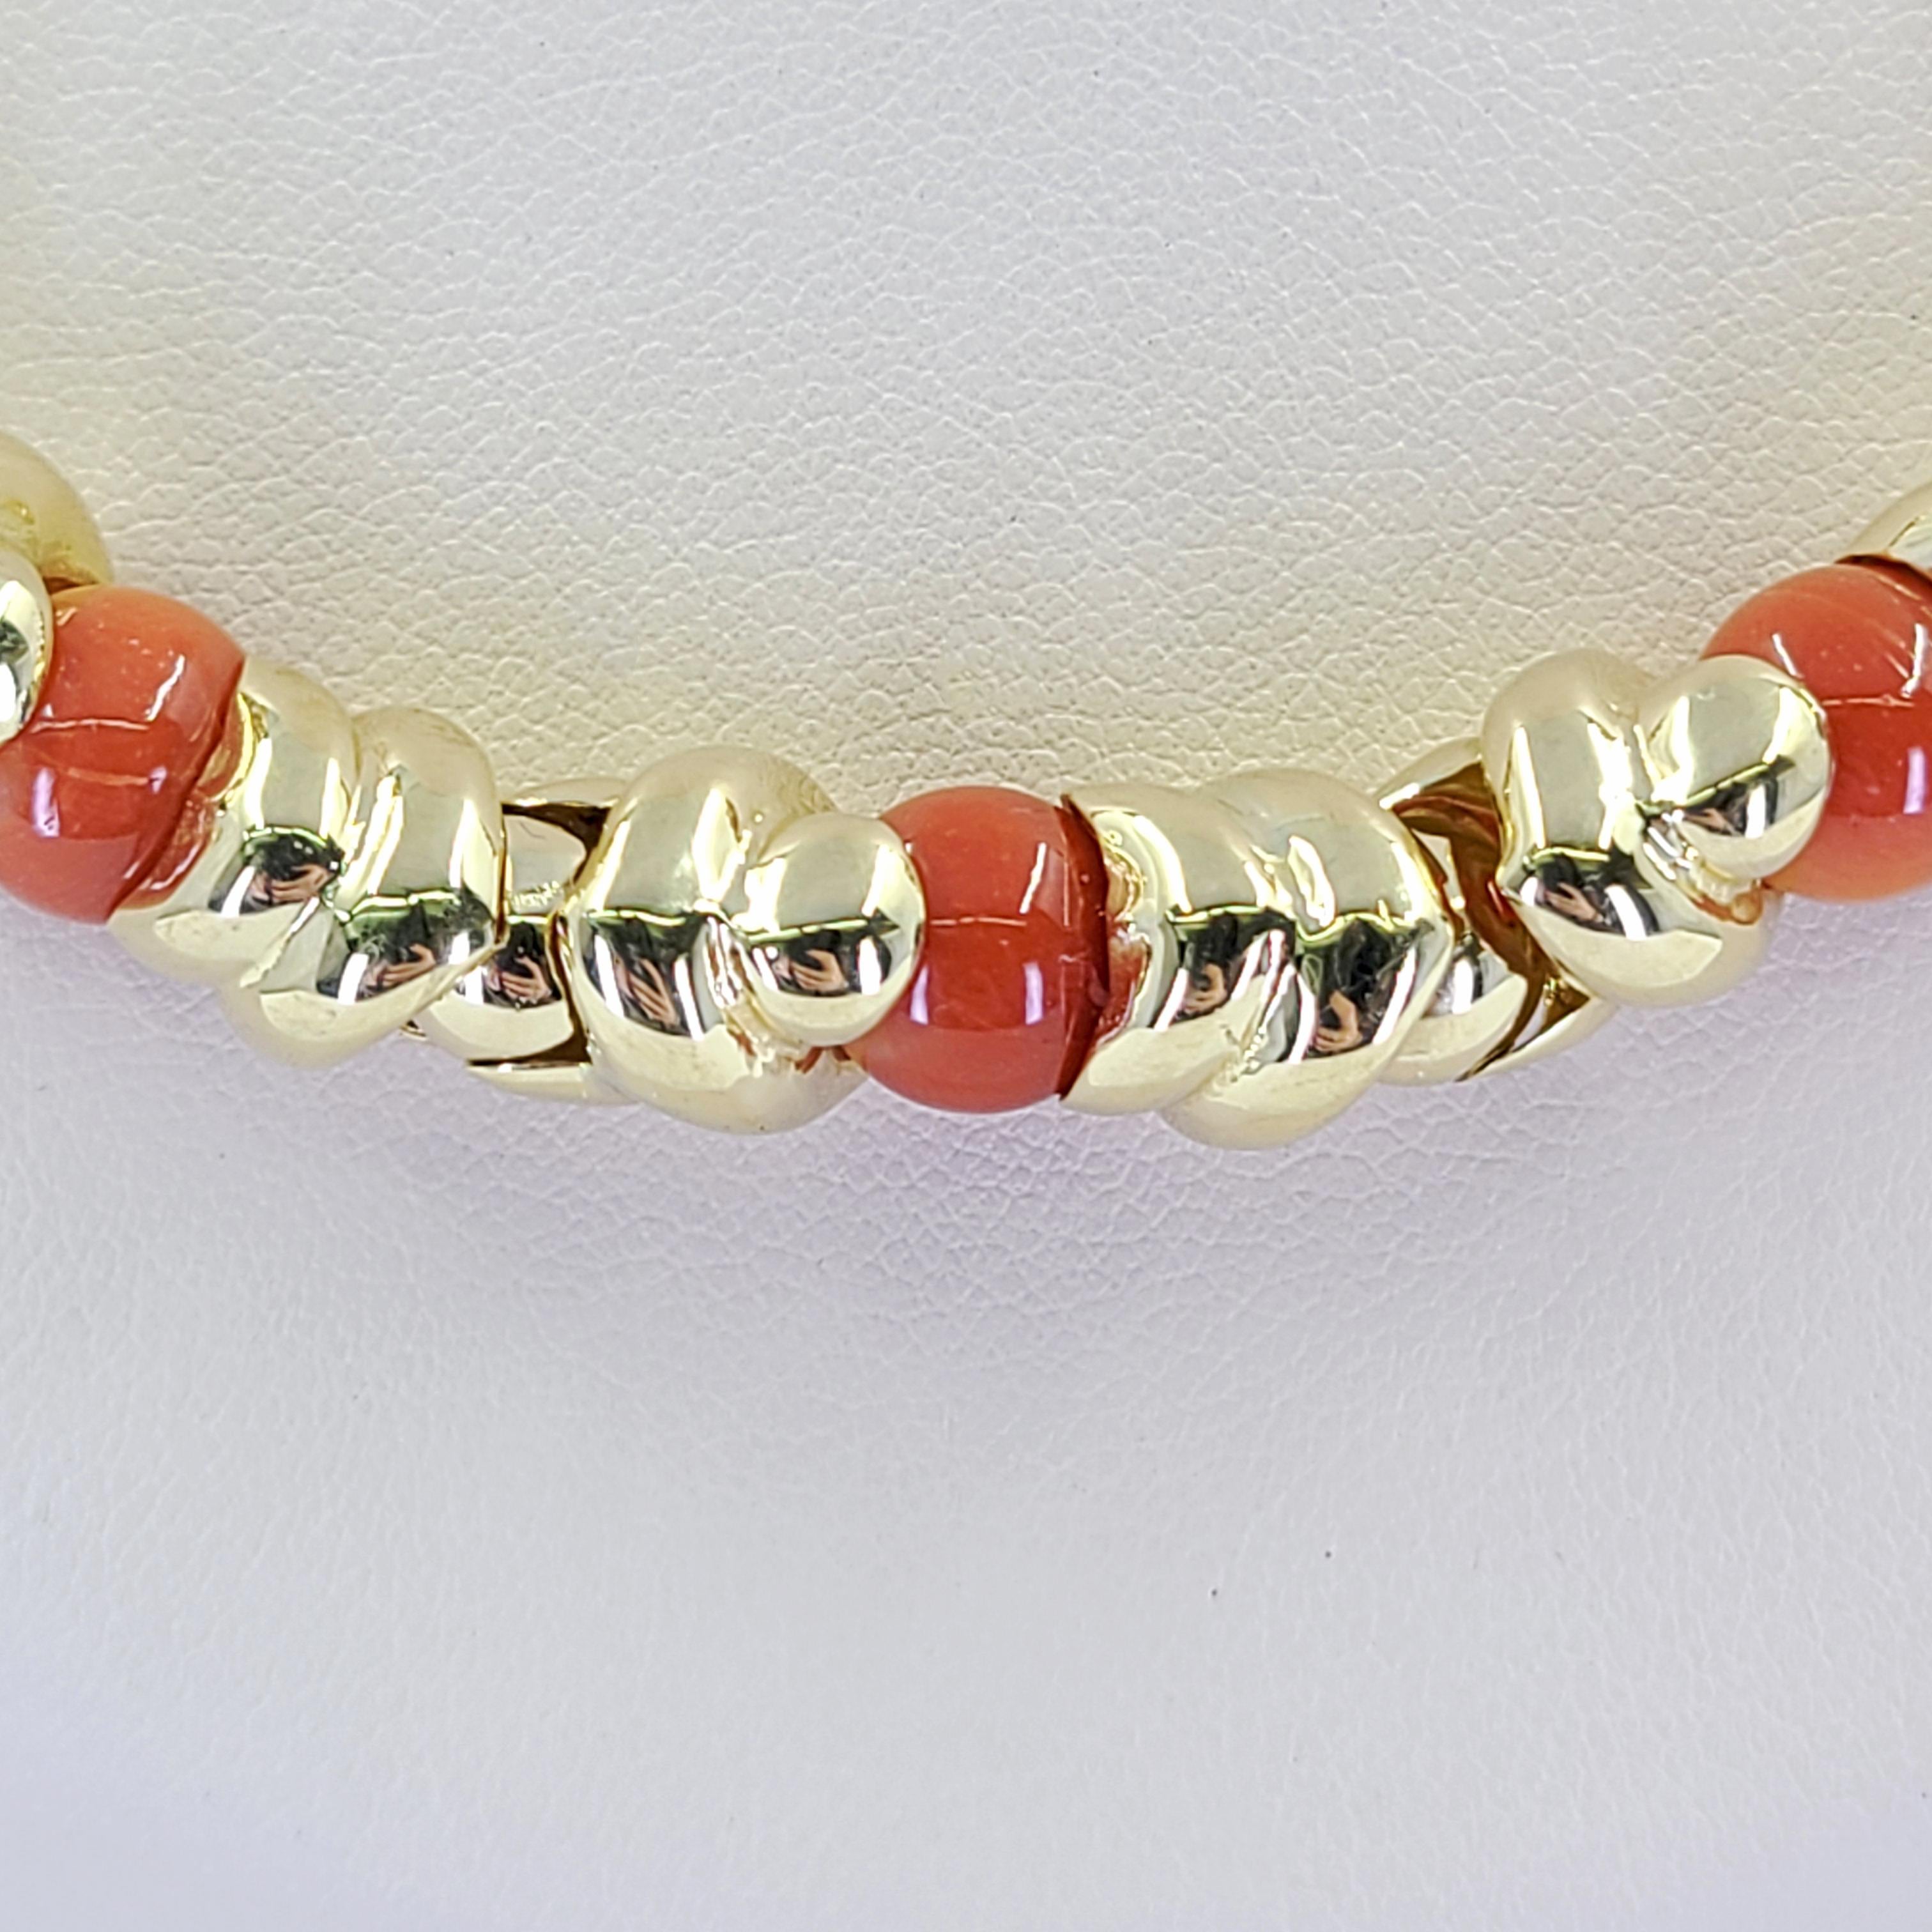 18 Karat Gelbgold Link Kragen Halskette mit 21 runden 8mm Korallen Perlen. 18,5 Zoll lang mit versteckten Box Clasp und Abbildung 8 Sicherheit. Das fertige Gewicht beträgt 69.1 Gramm. Das dazu passende Armband ist separat erhältlich.